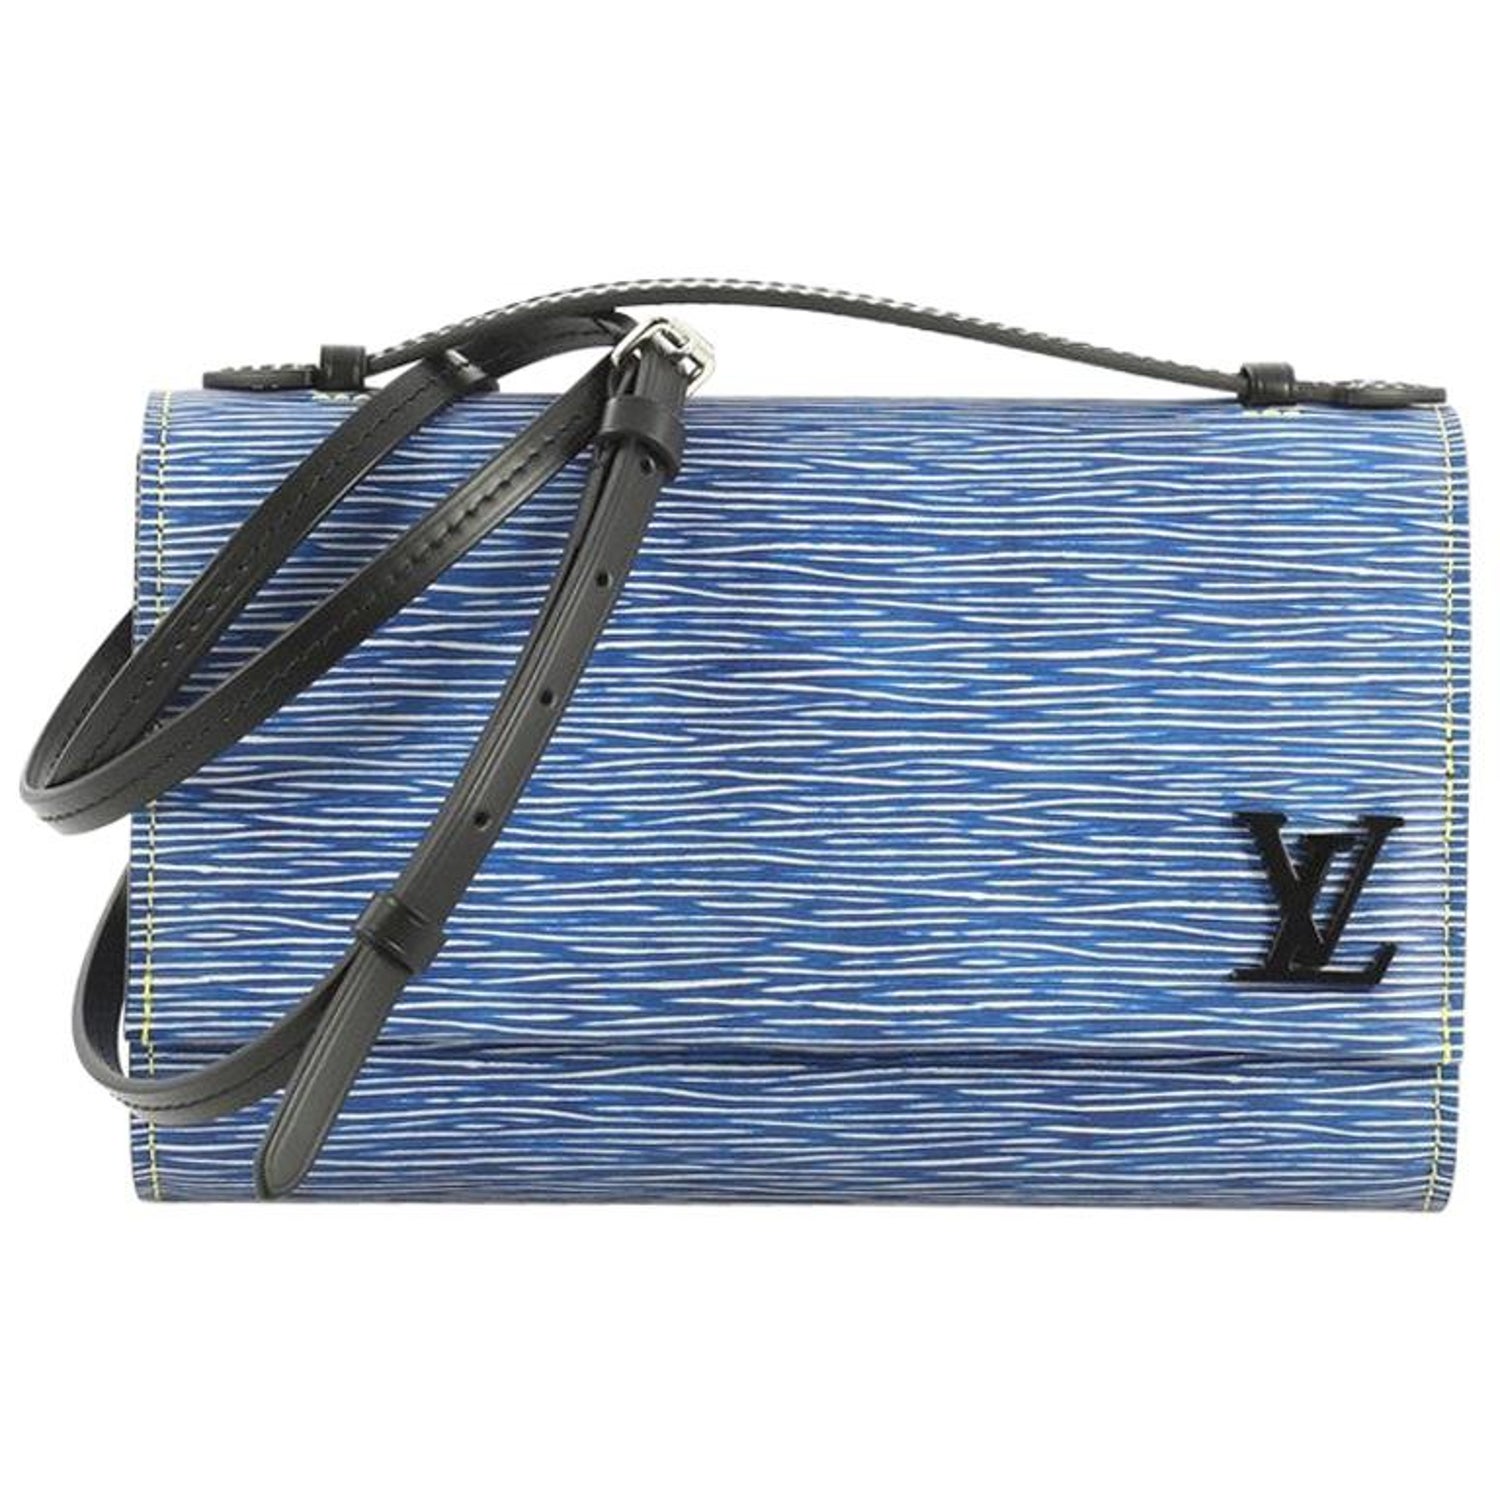 Louis Vuitton Dune EPI Leather Clery Pochette Bag